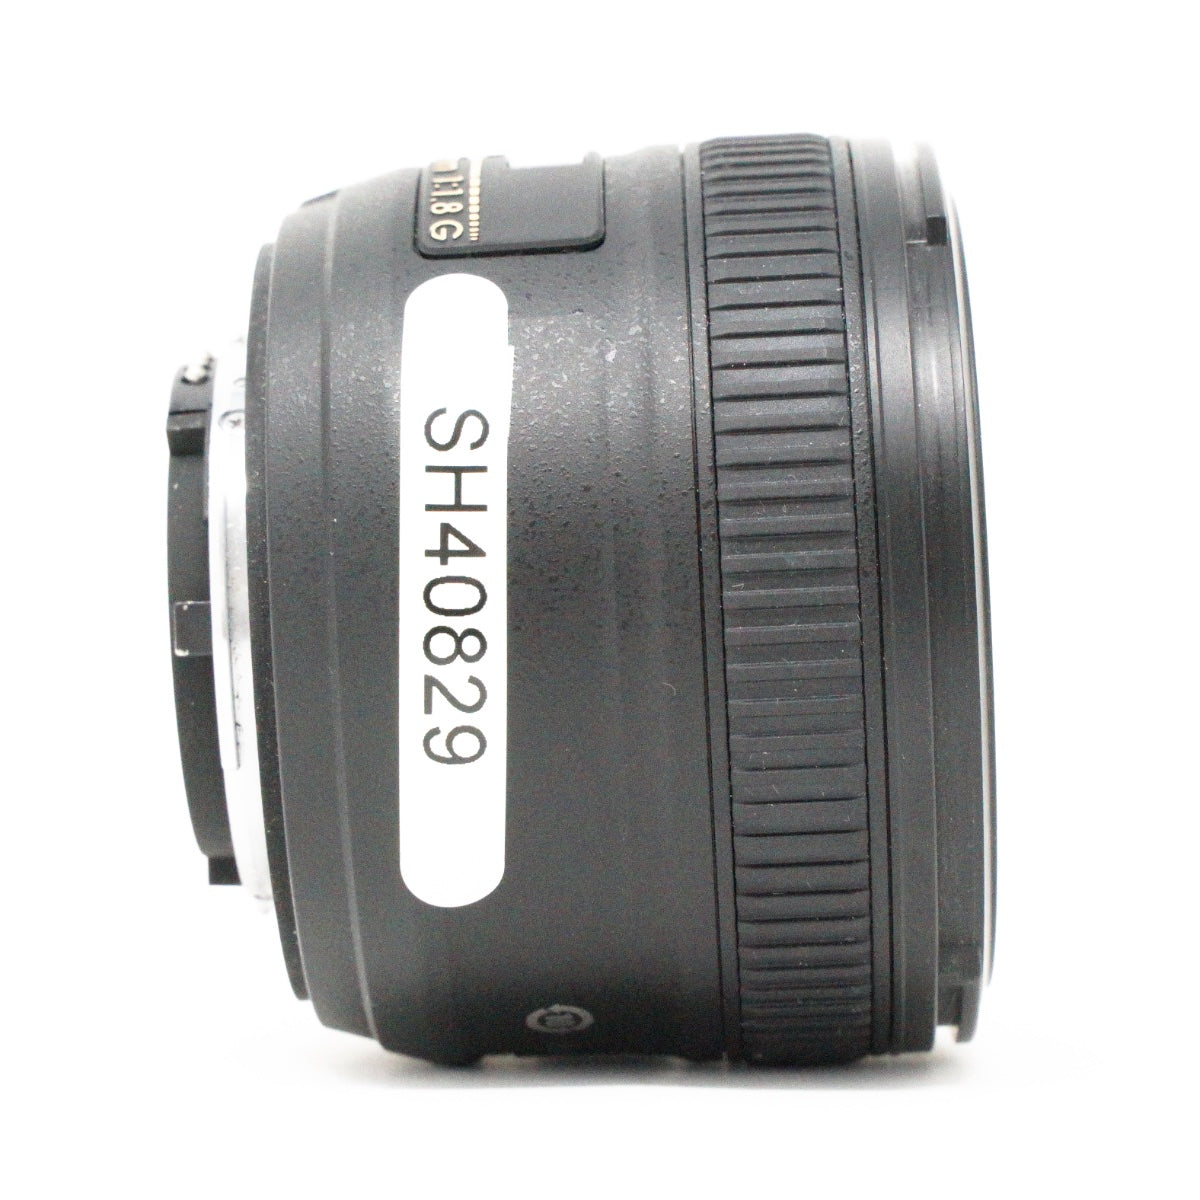 Used Nikon AF-S Nikkor 50mm F/1.8G Lens DX